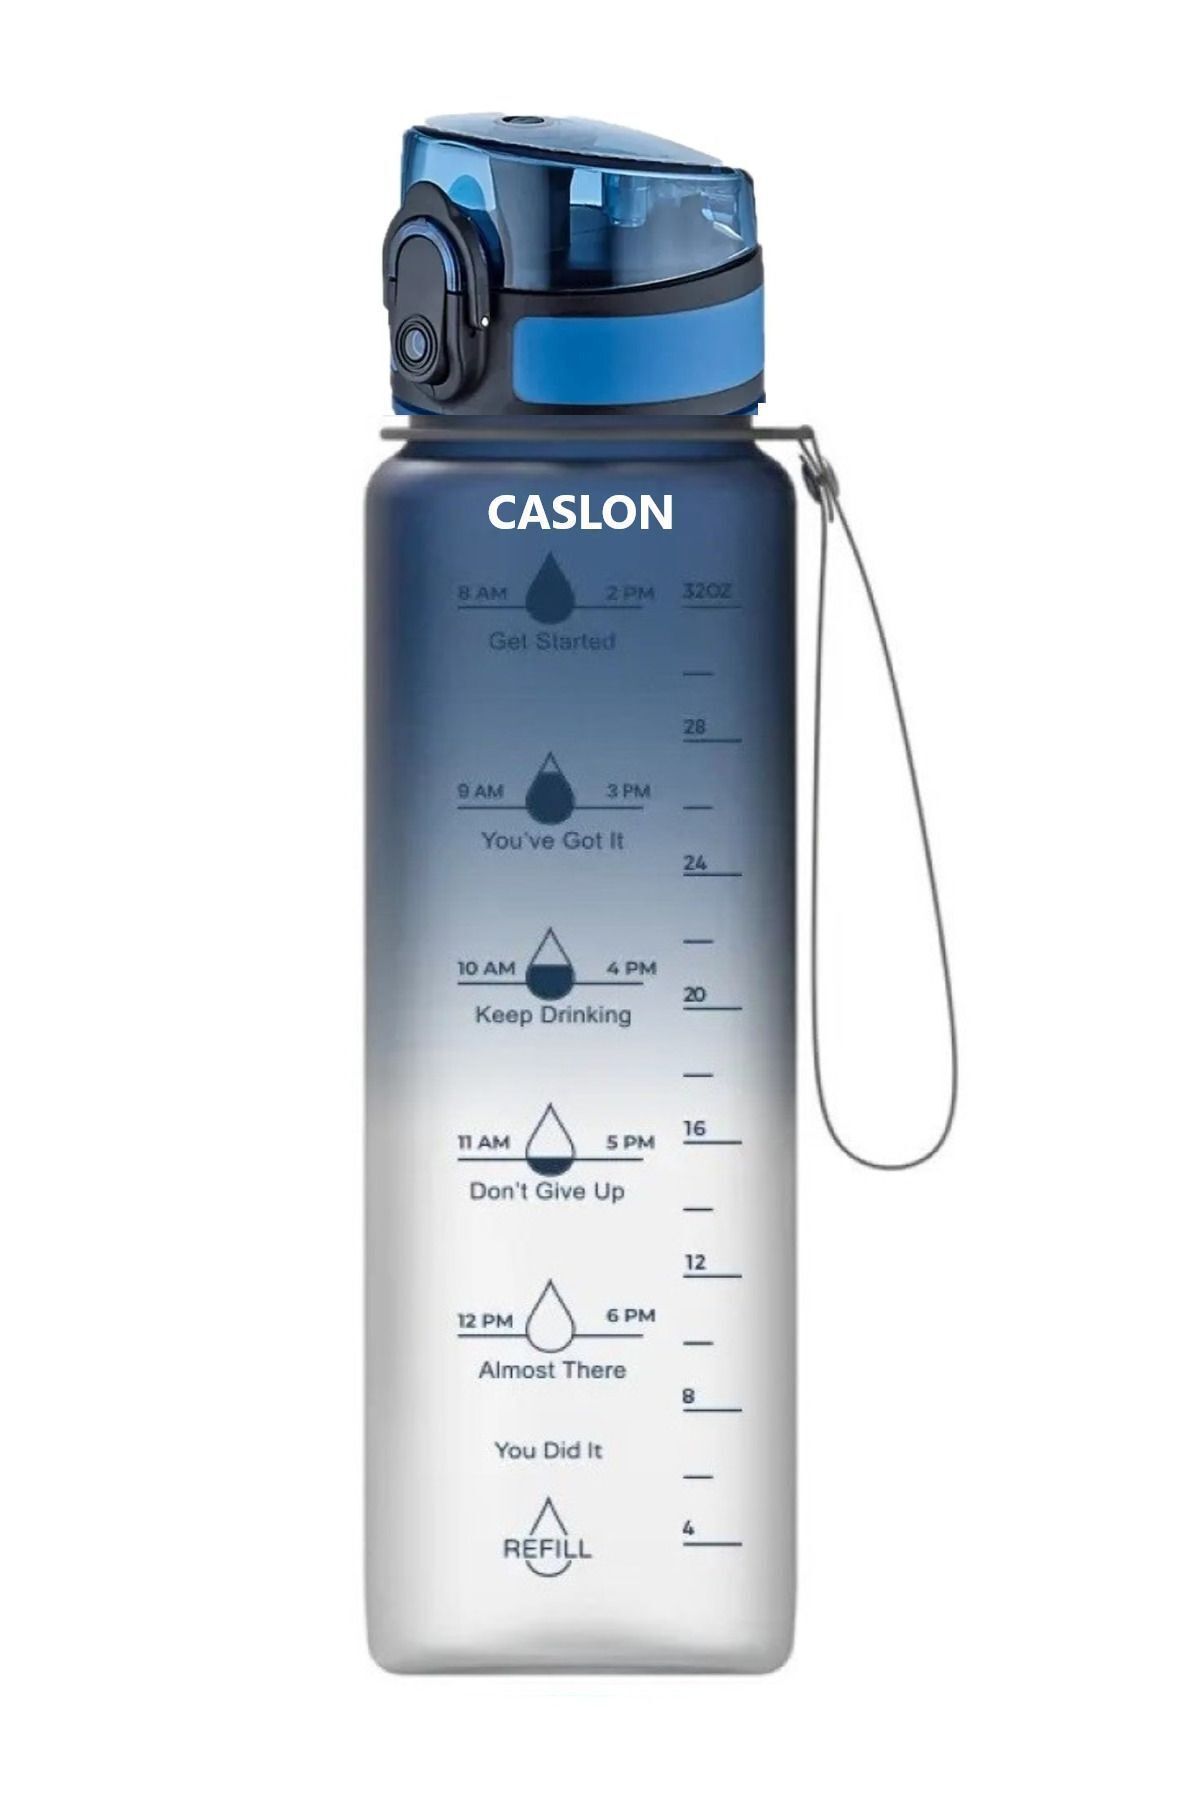 CASLON Su Matarası Tritan 1 Litre Koku Sızdırma Yapmaz Sporcu Matarası Su Şisesi Suluk Motivasyonel Uzspace